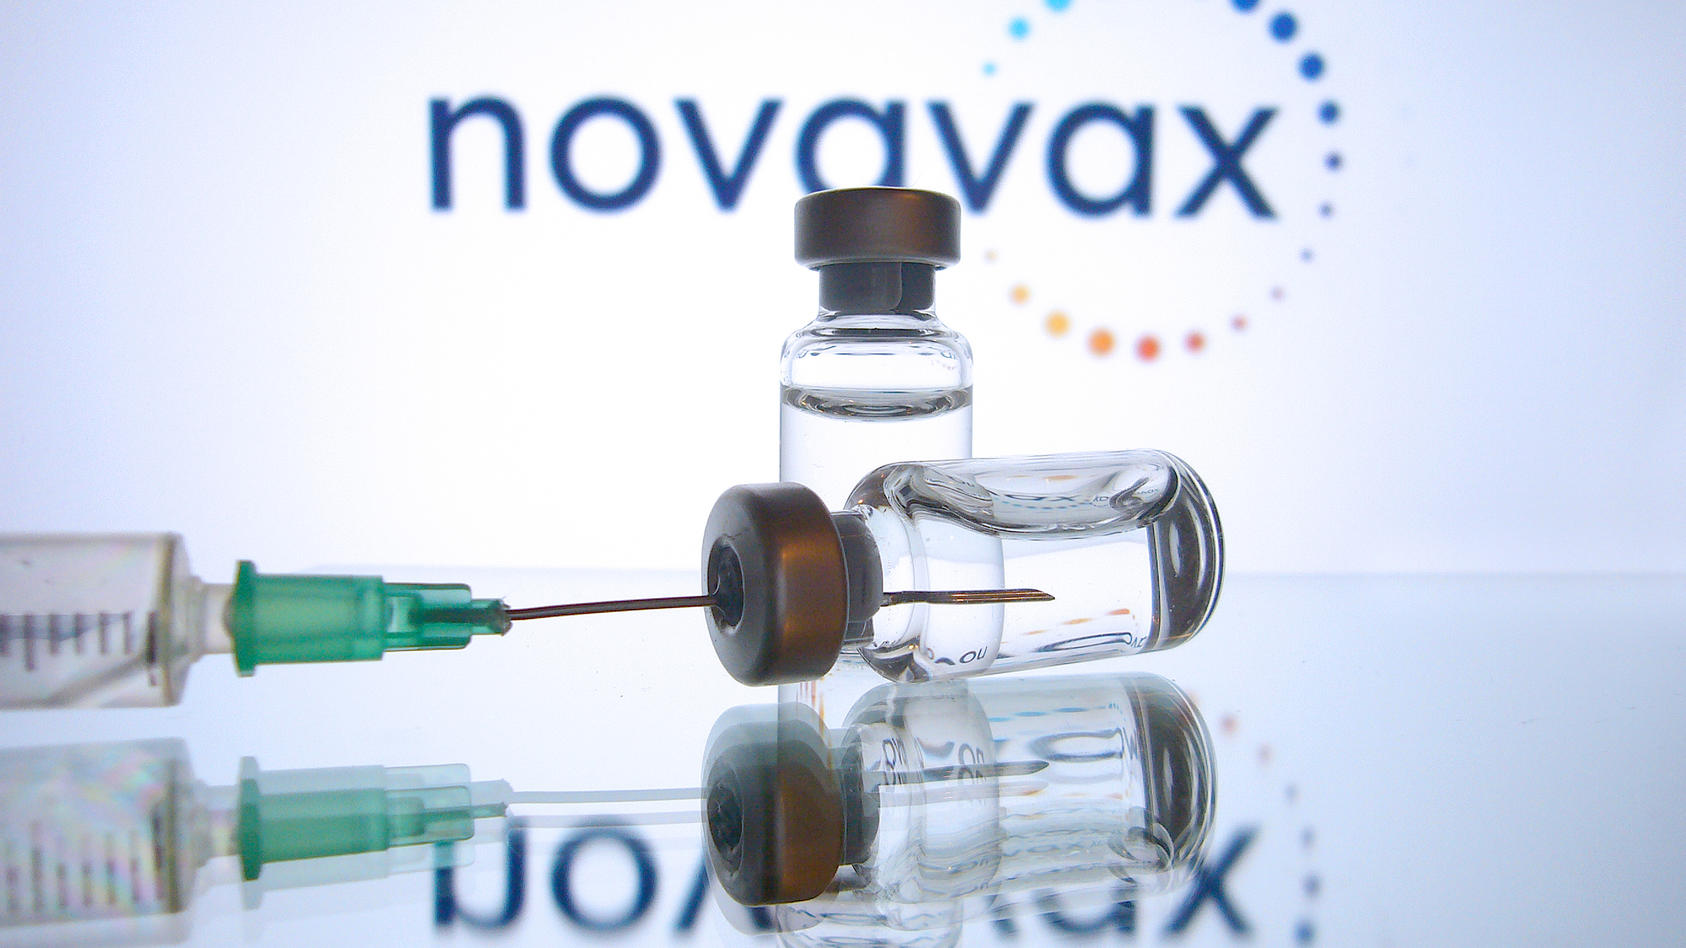 Registrierungen explodieren - Riesen-Run auf Novavax-Impfstoff